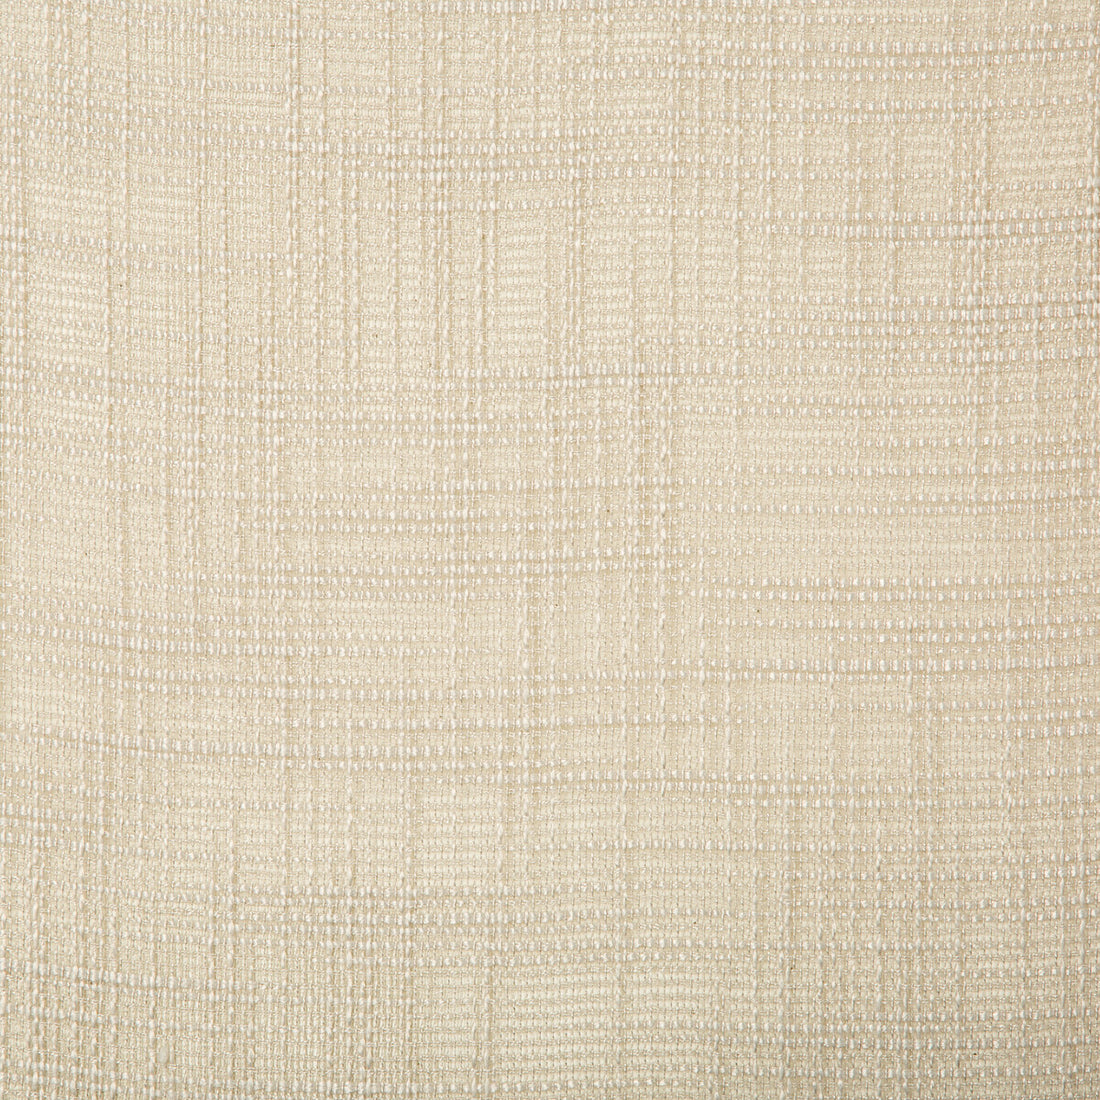 Kravet Basics fabric in 4670-11 color - pattern 4670.11.0 - by Kravet Basics